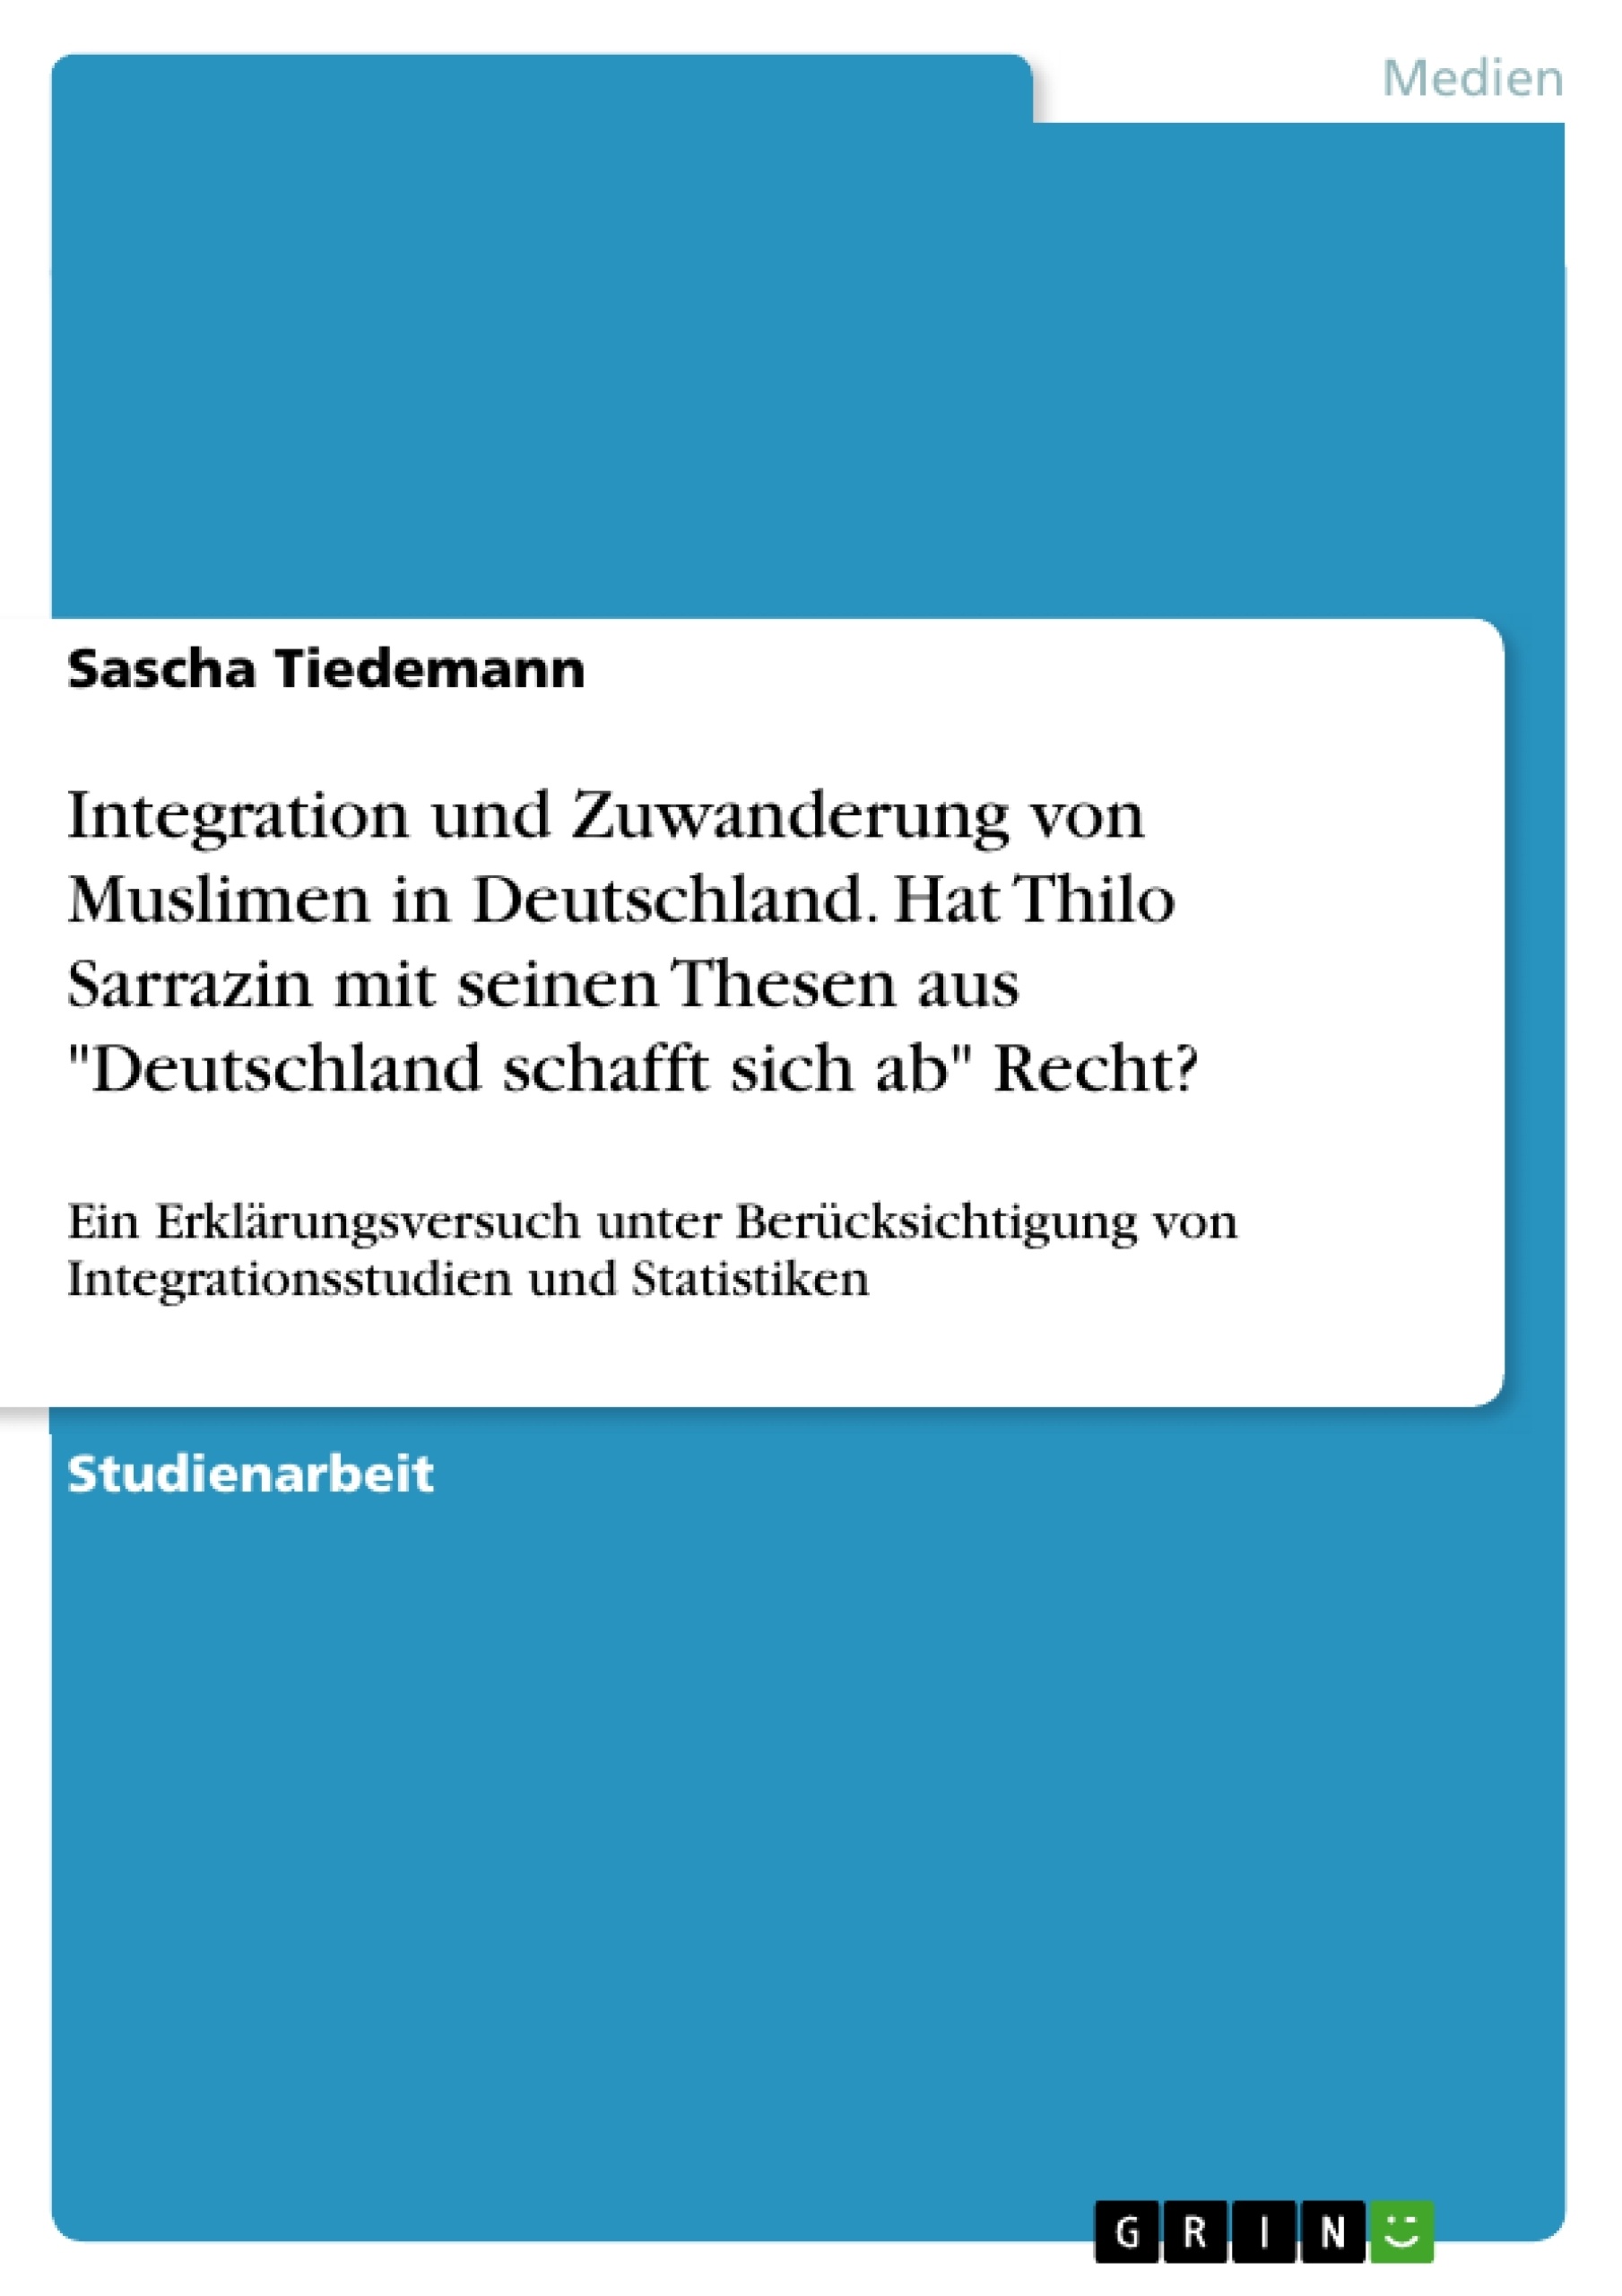 Title: Integration und Zuwanderung von Muslimen in Deutschland. Hat Thilo Sarrazin mit seinen Thesen  aus "Deutschland schafft sich ab" Recht?